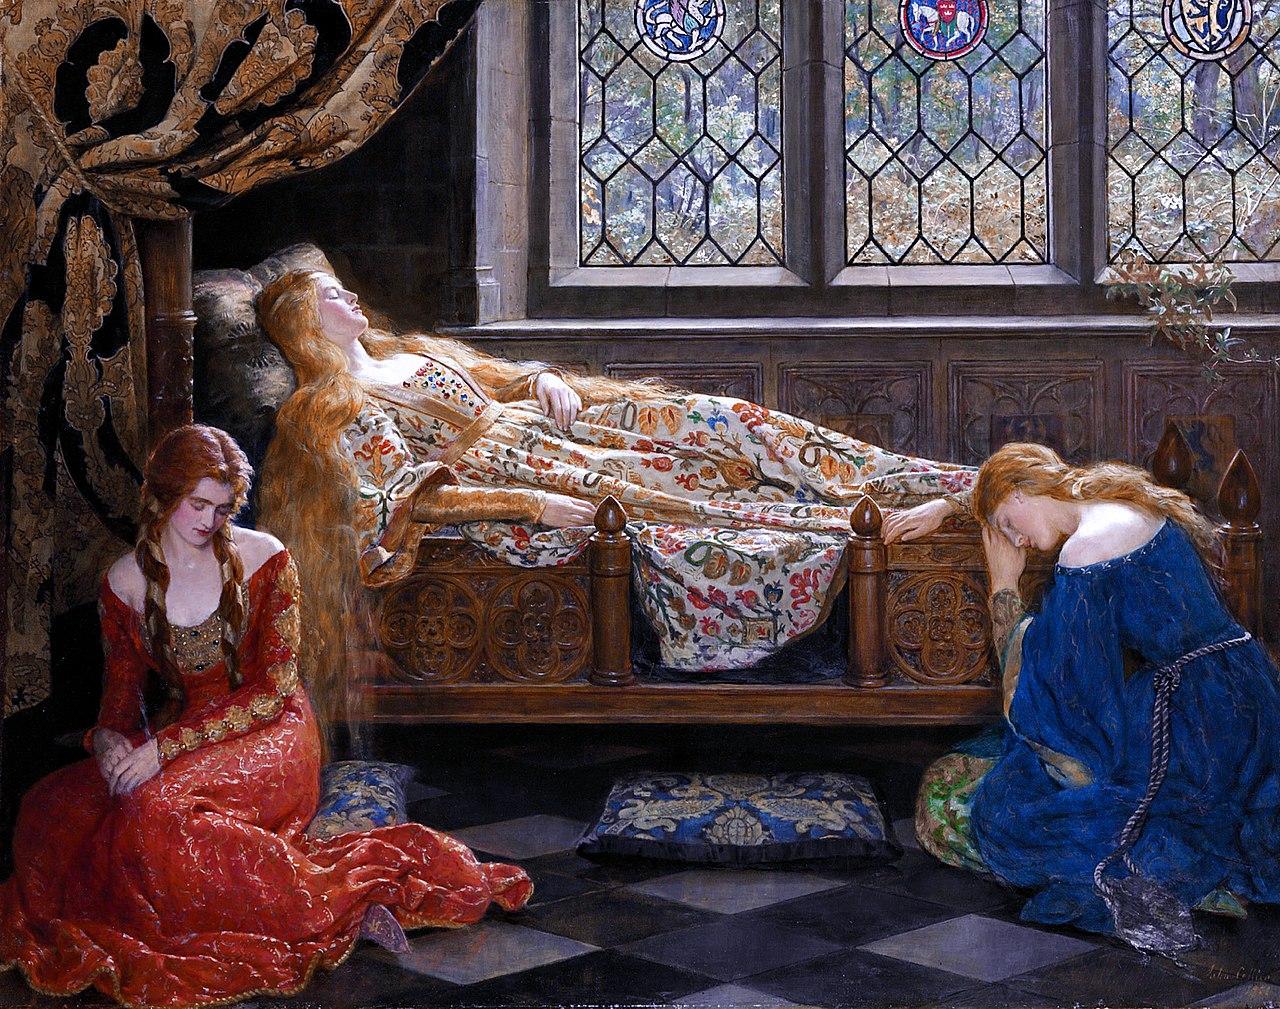 Ölbild von John Collier, 1921,The_sleeping_beauty_by_John_Collier_1